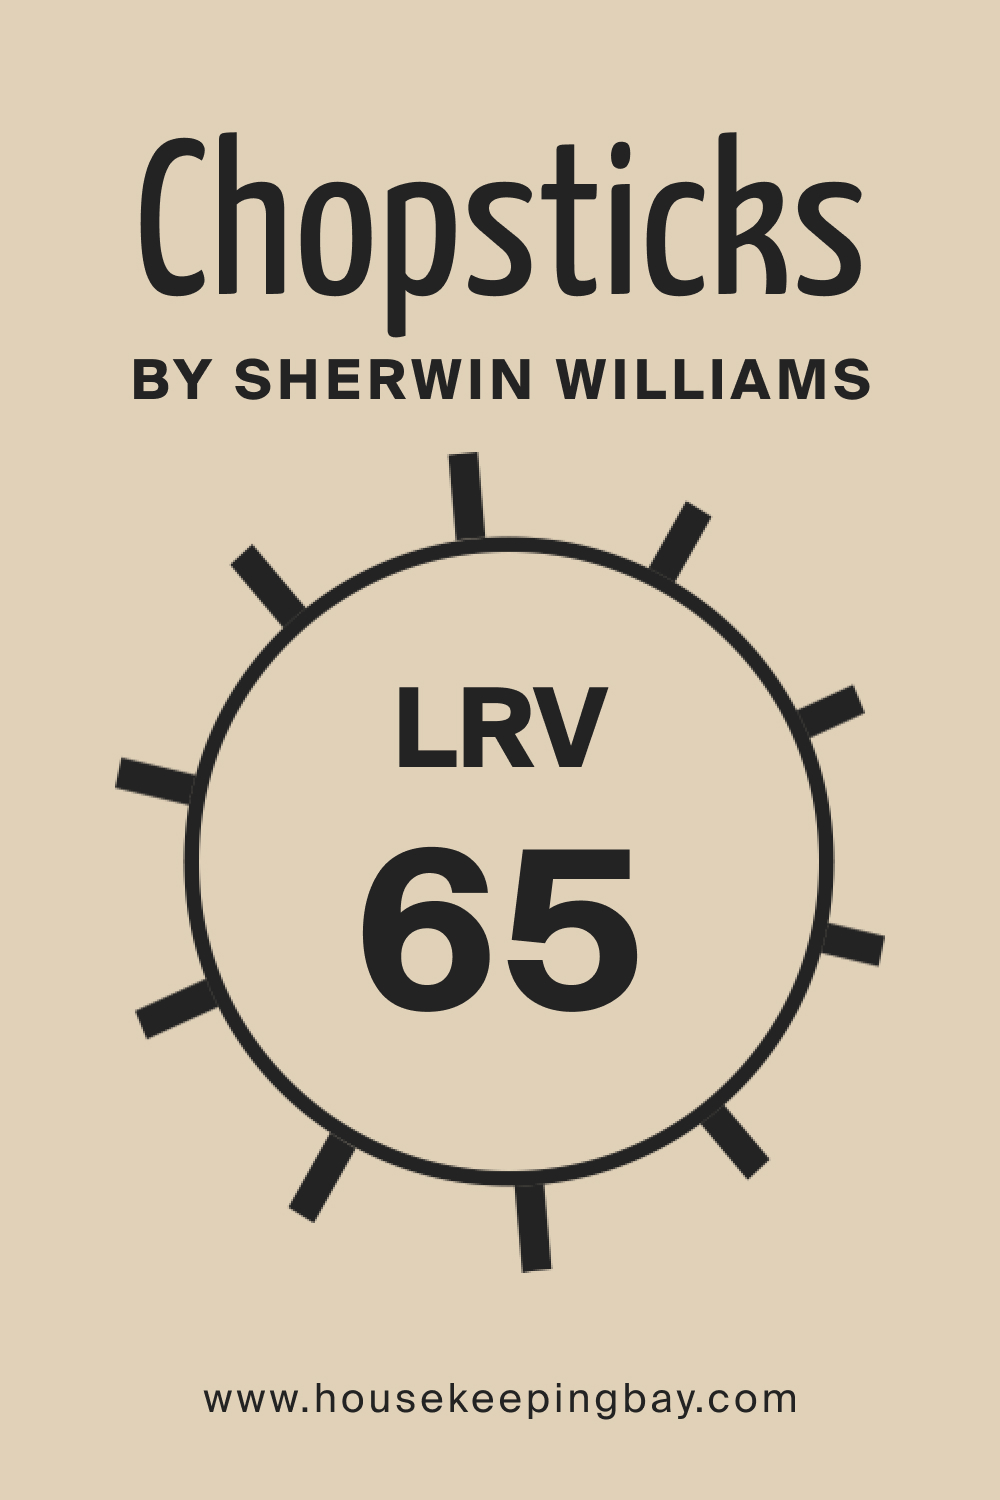 SW Chopsticks by Sherwin Williams. LRV – 65